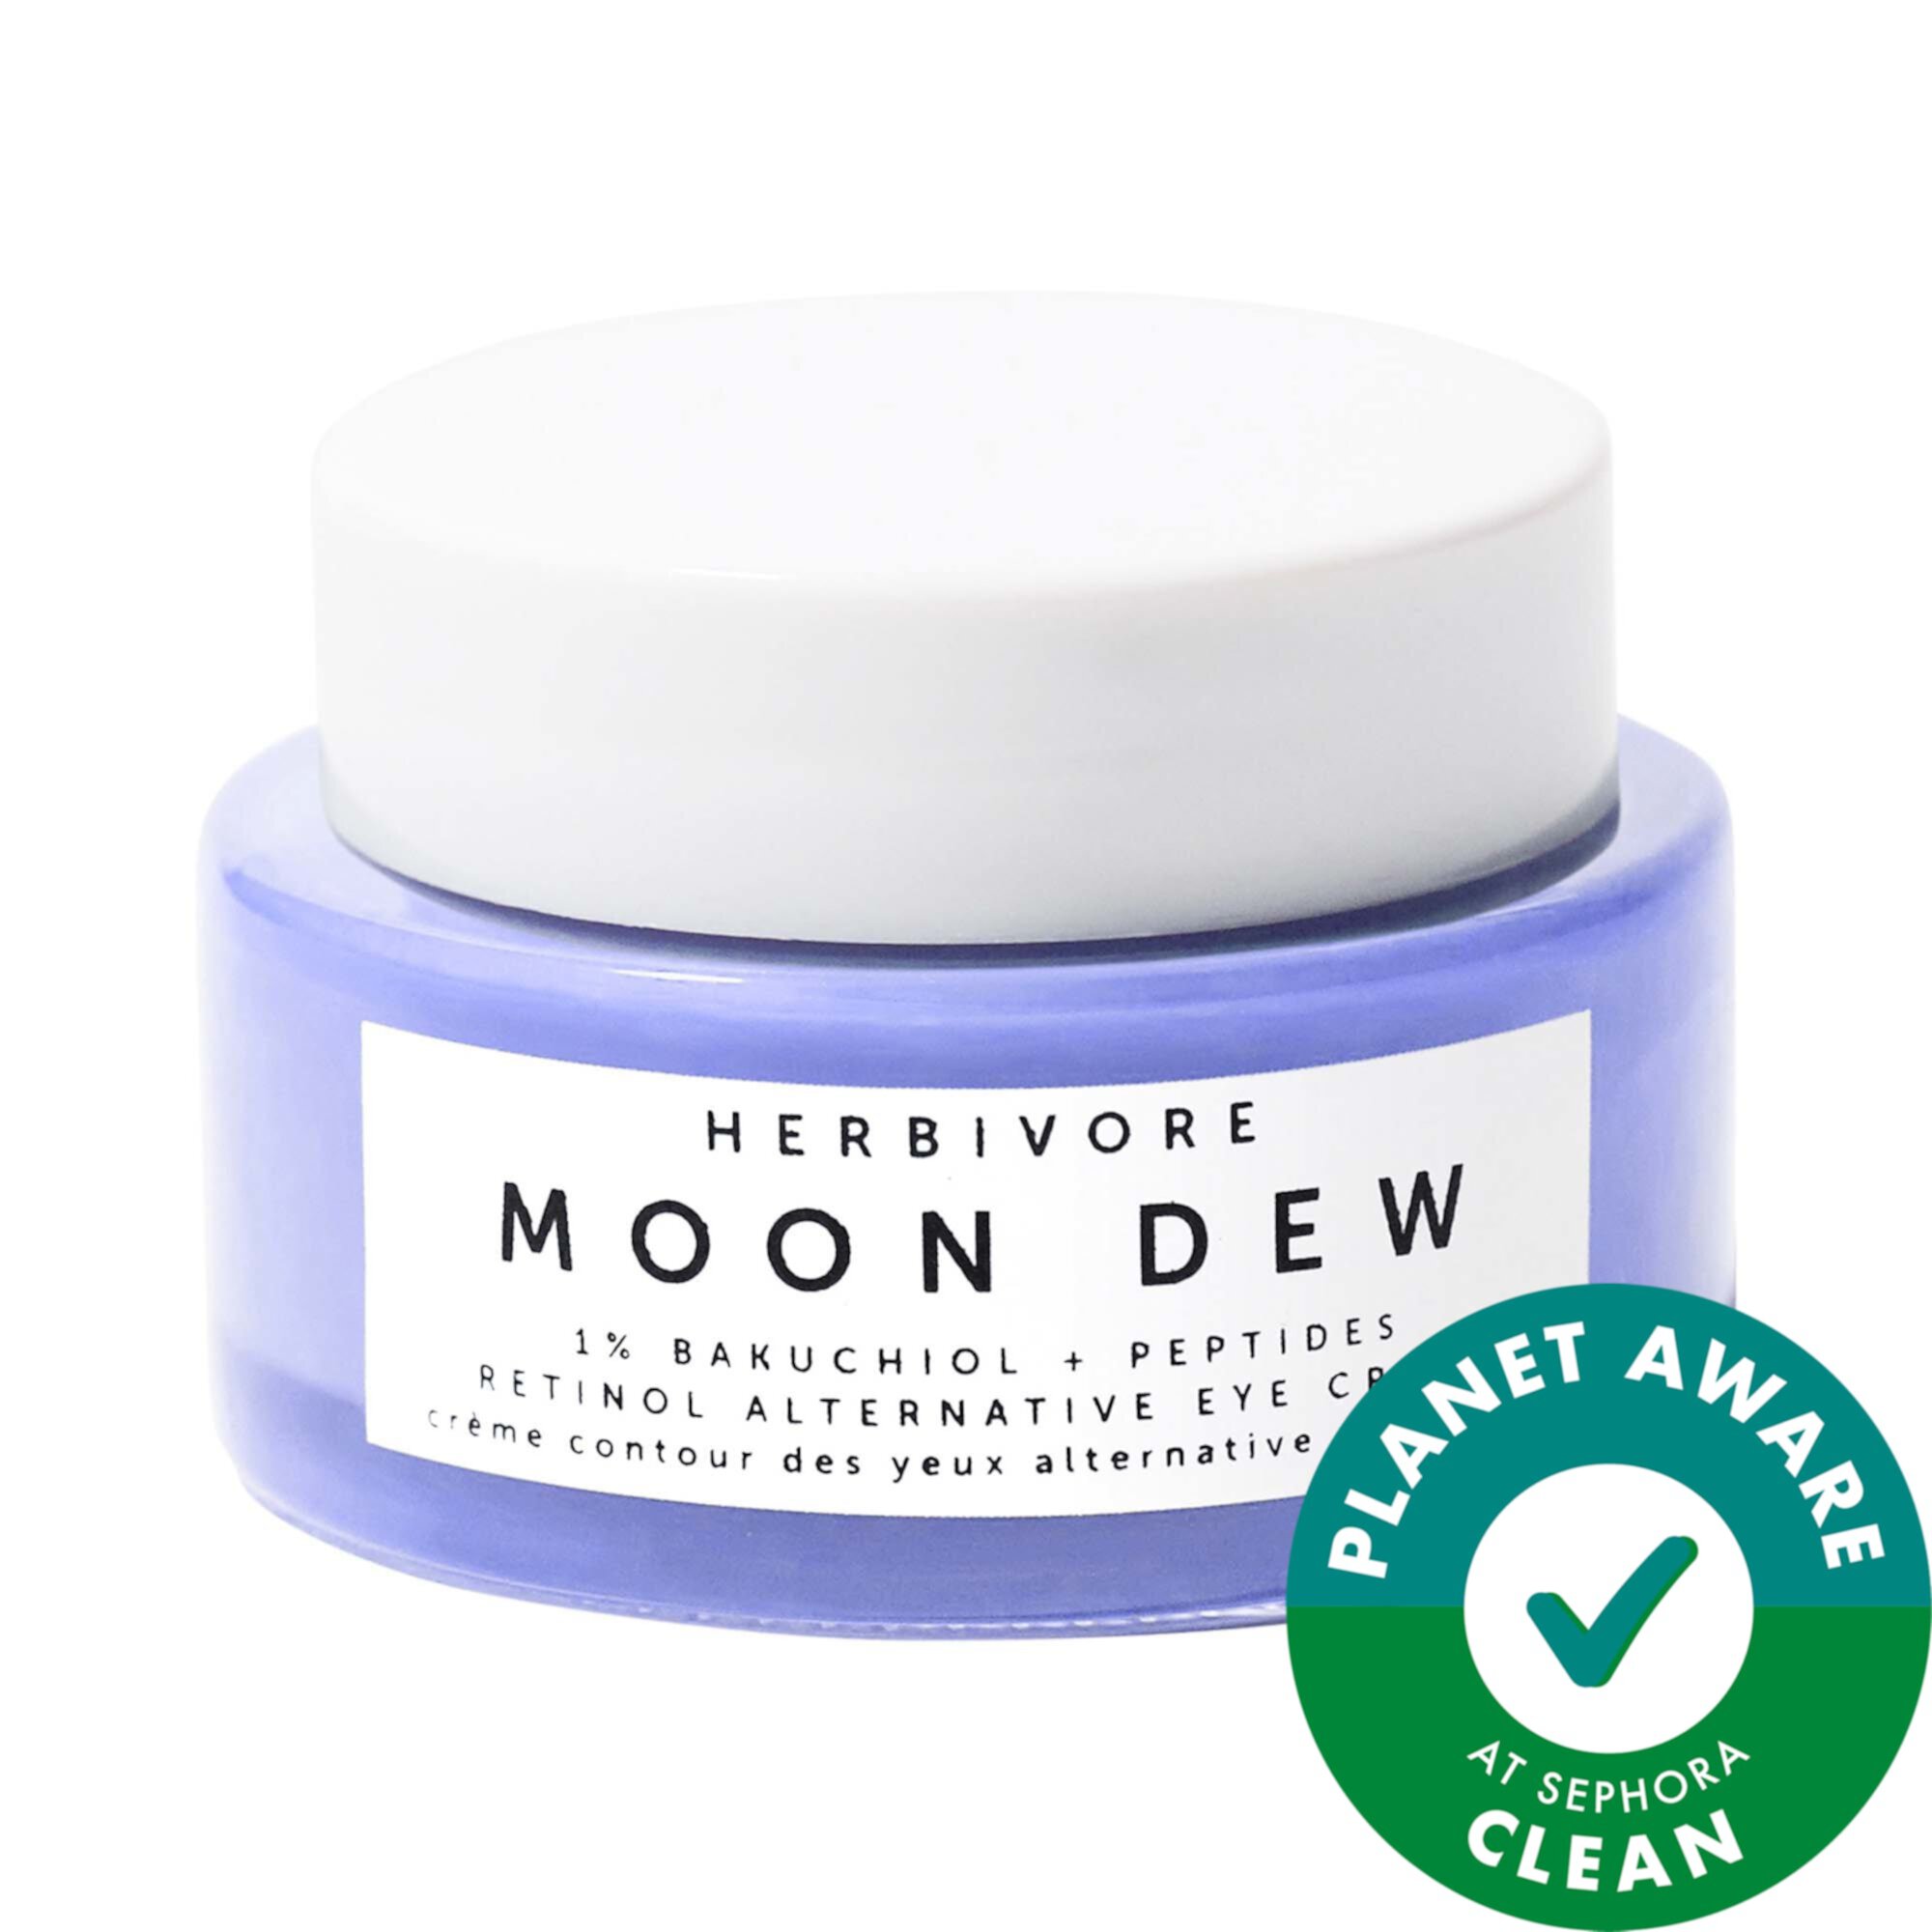 Moon Dew 1% Бакучиол + Пептиды Ретинол Альтернативный крем для глаз Herbivore